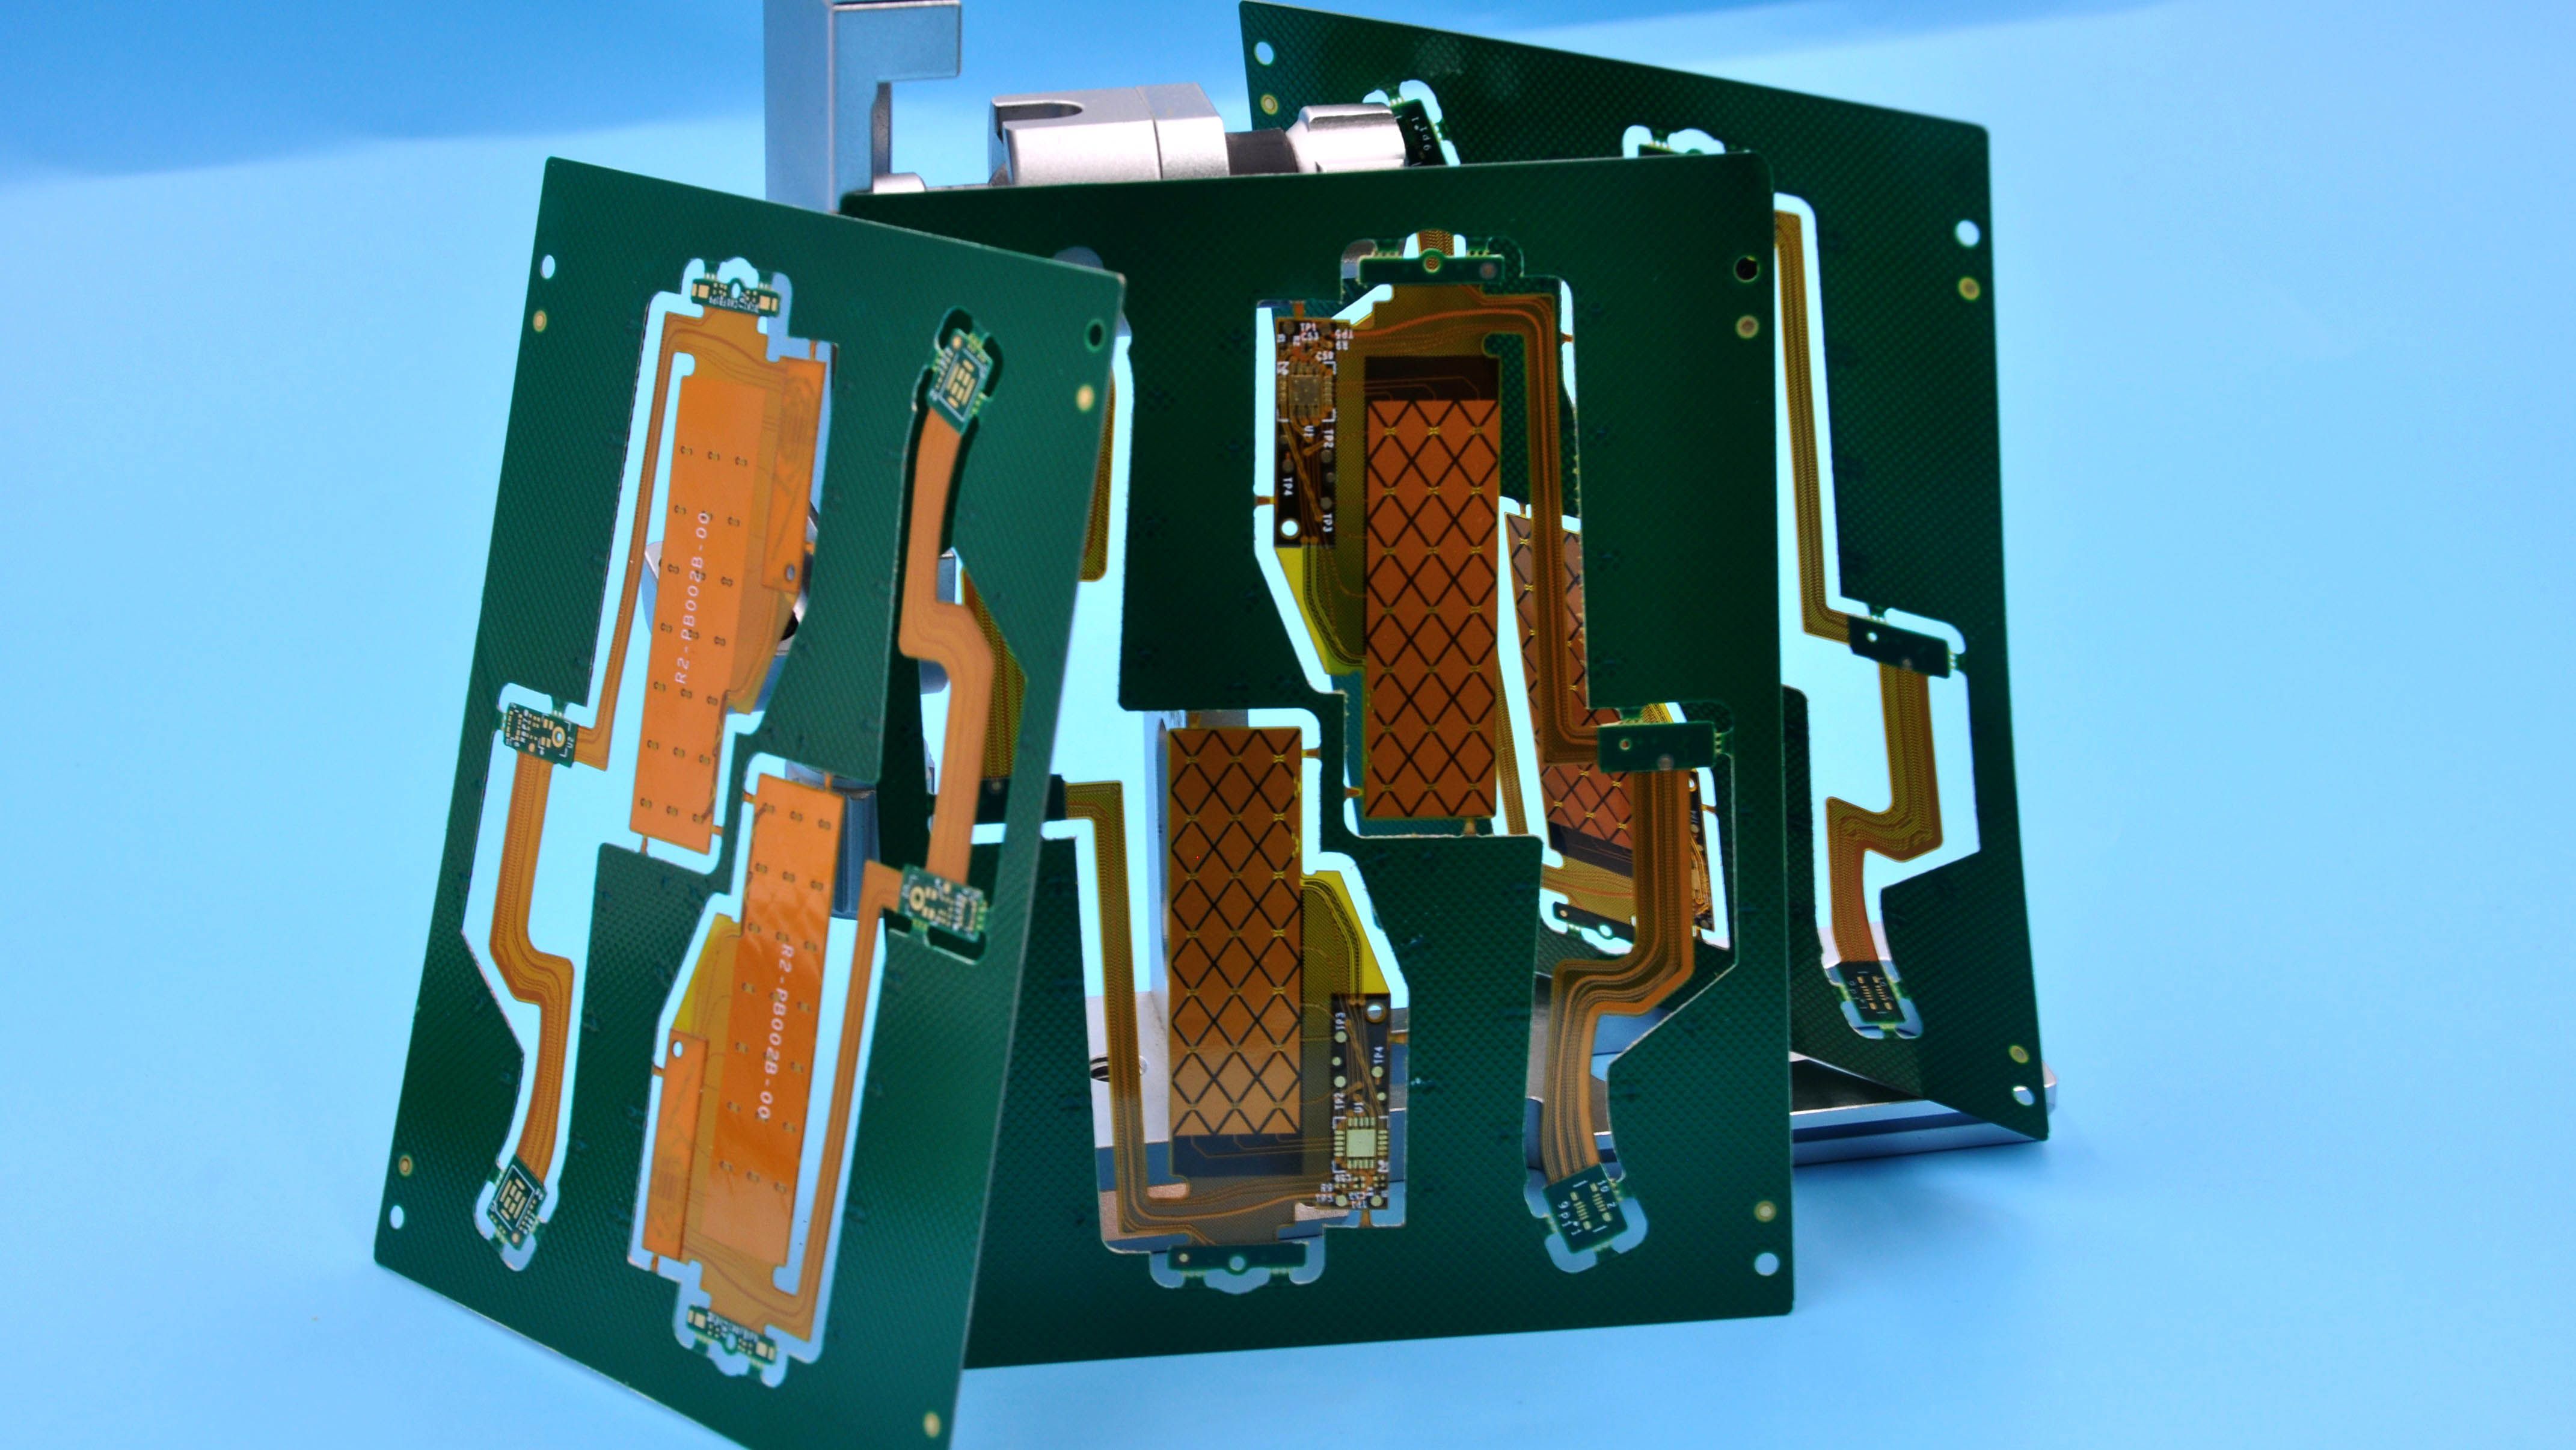 Propra Multitavola HDI Rigid-fleksa PCB por Smart Device de Plej Bona Teknologio